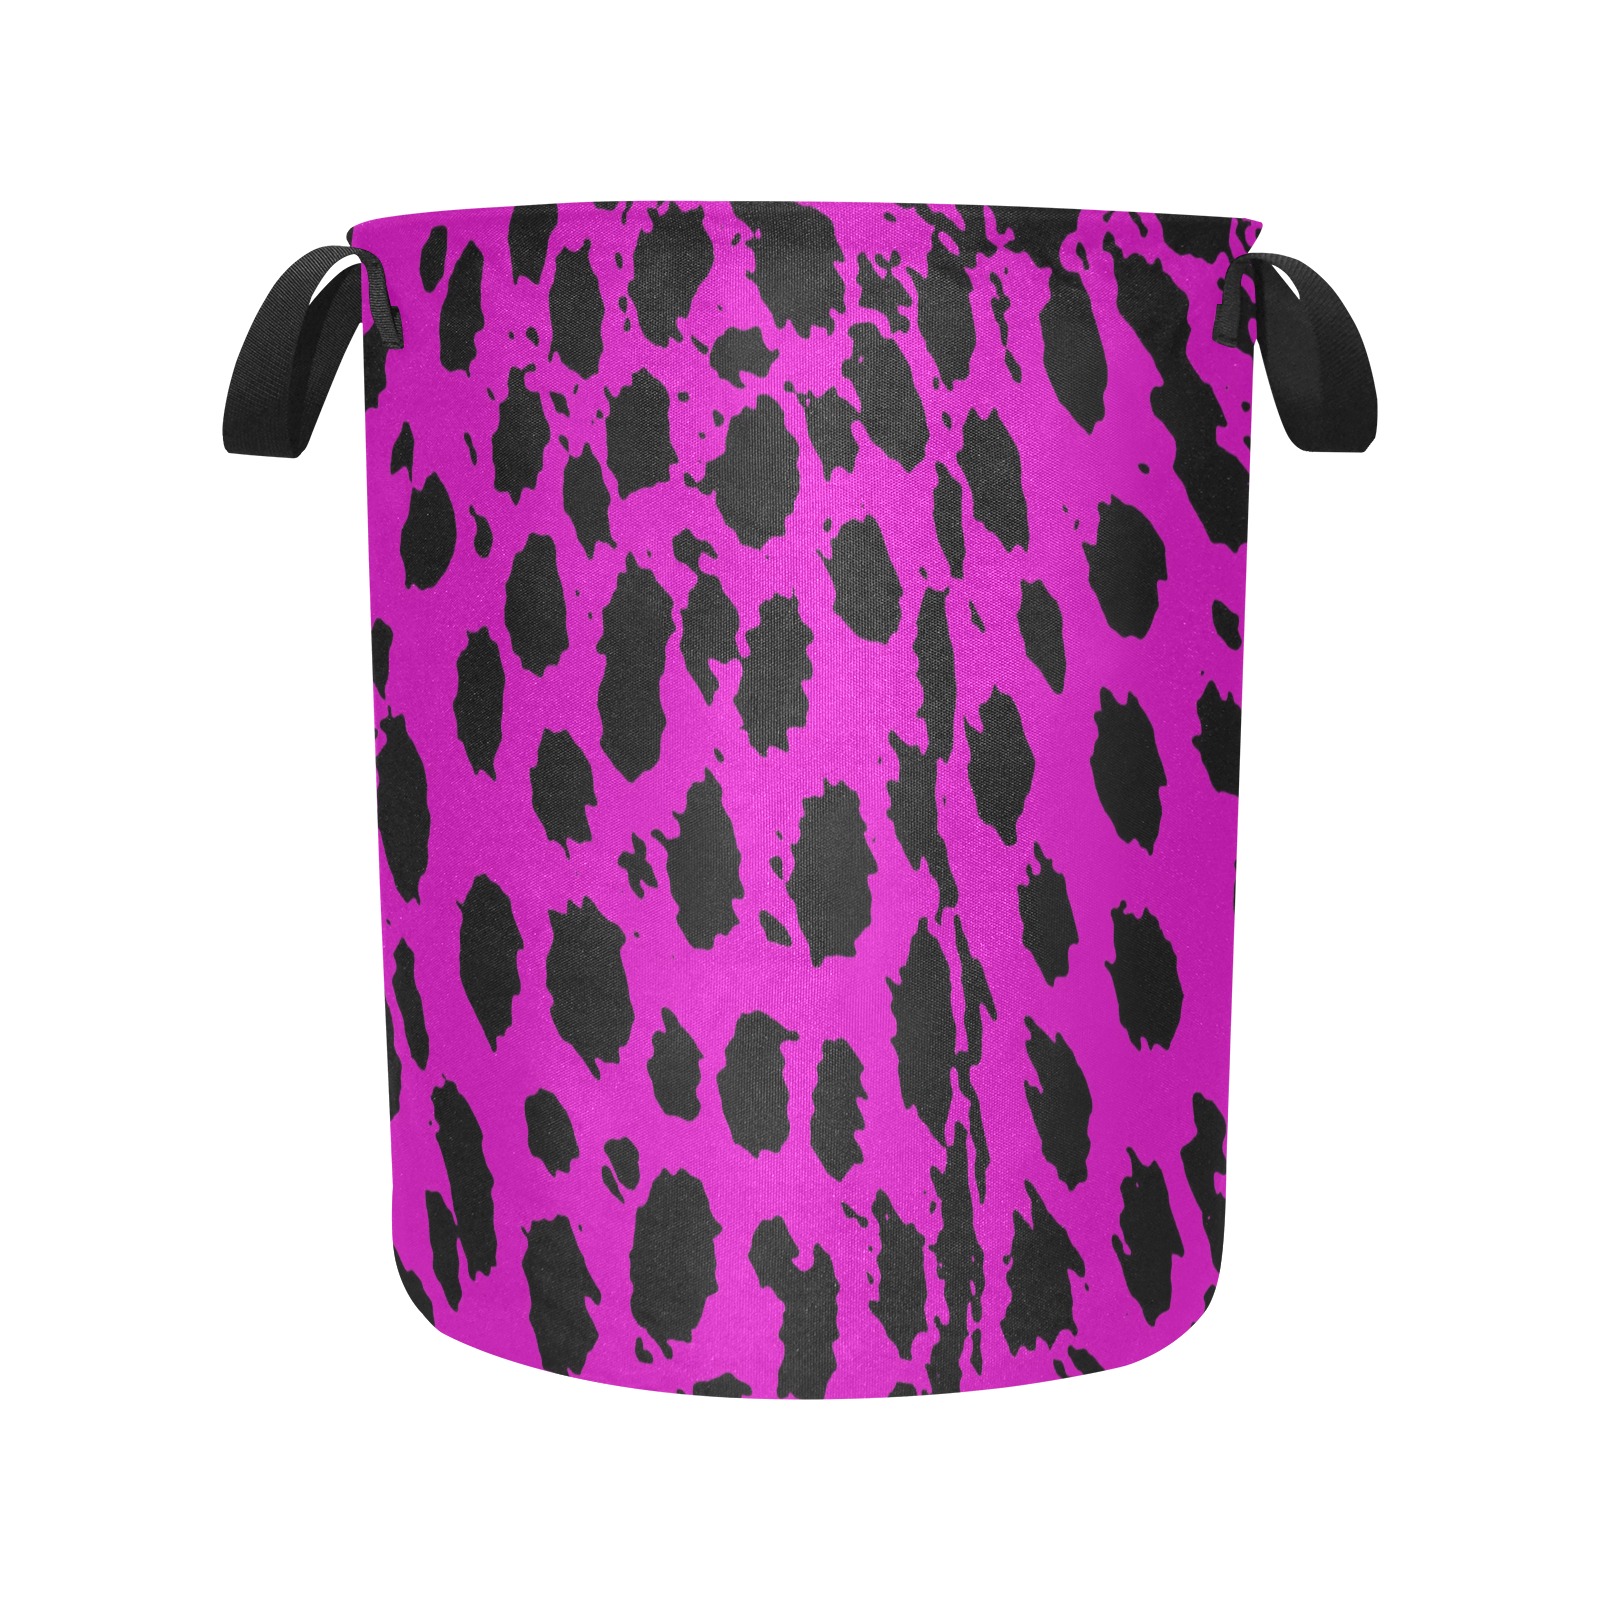 Cheetah Hot Pink Laundry Bag (Large)